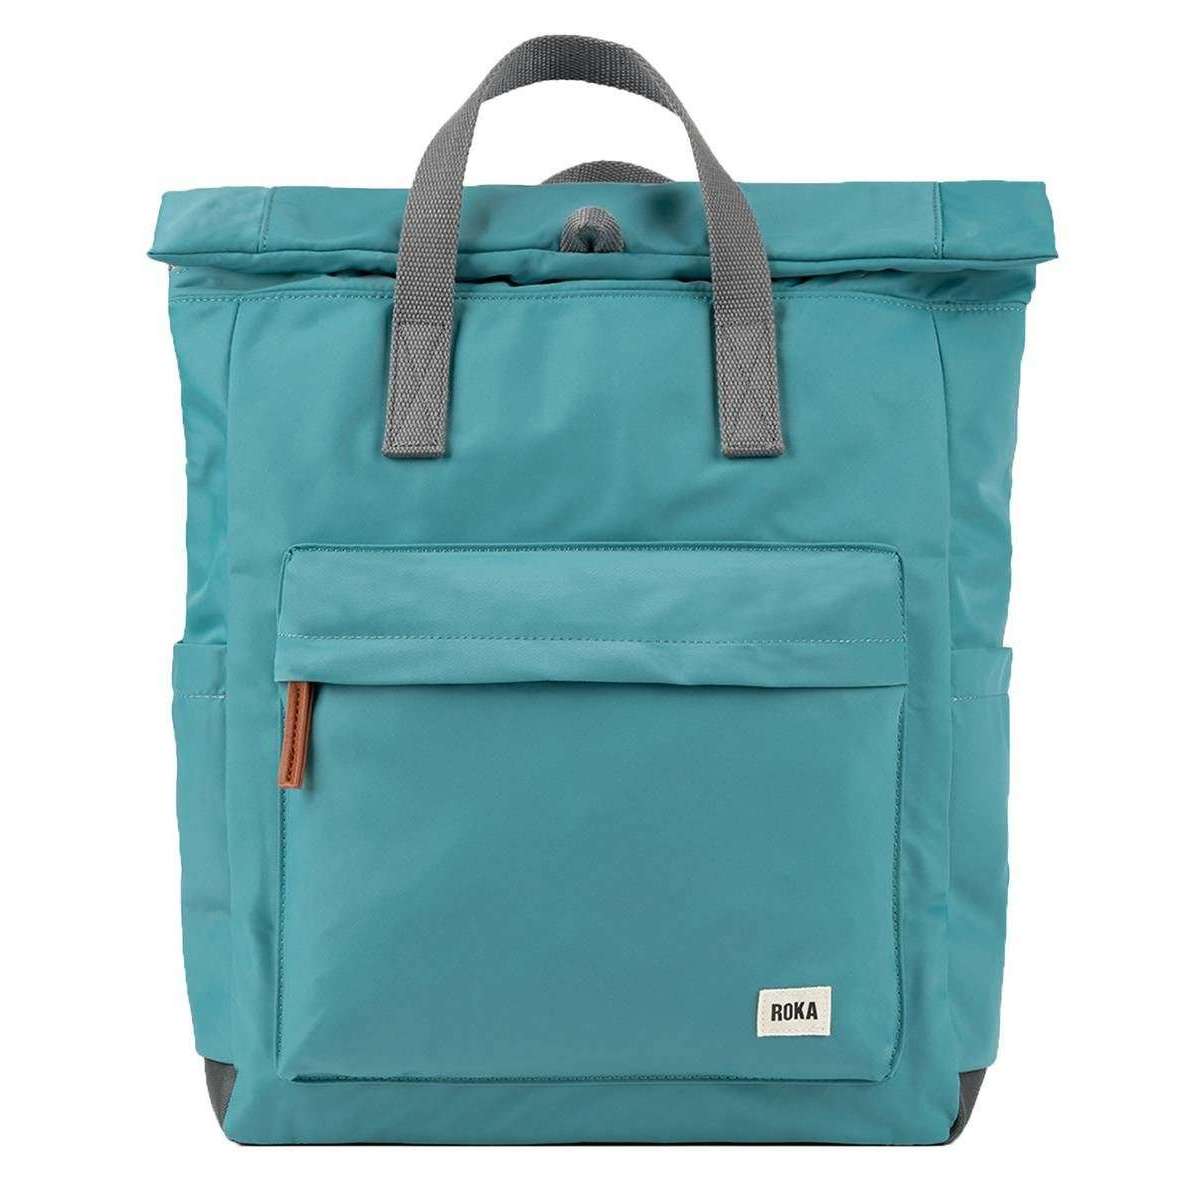 Roka Canfield B Large Sustainable Nylon Backpack - Petrol Blue